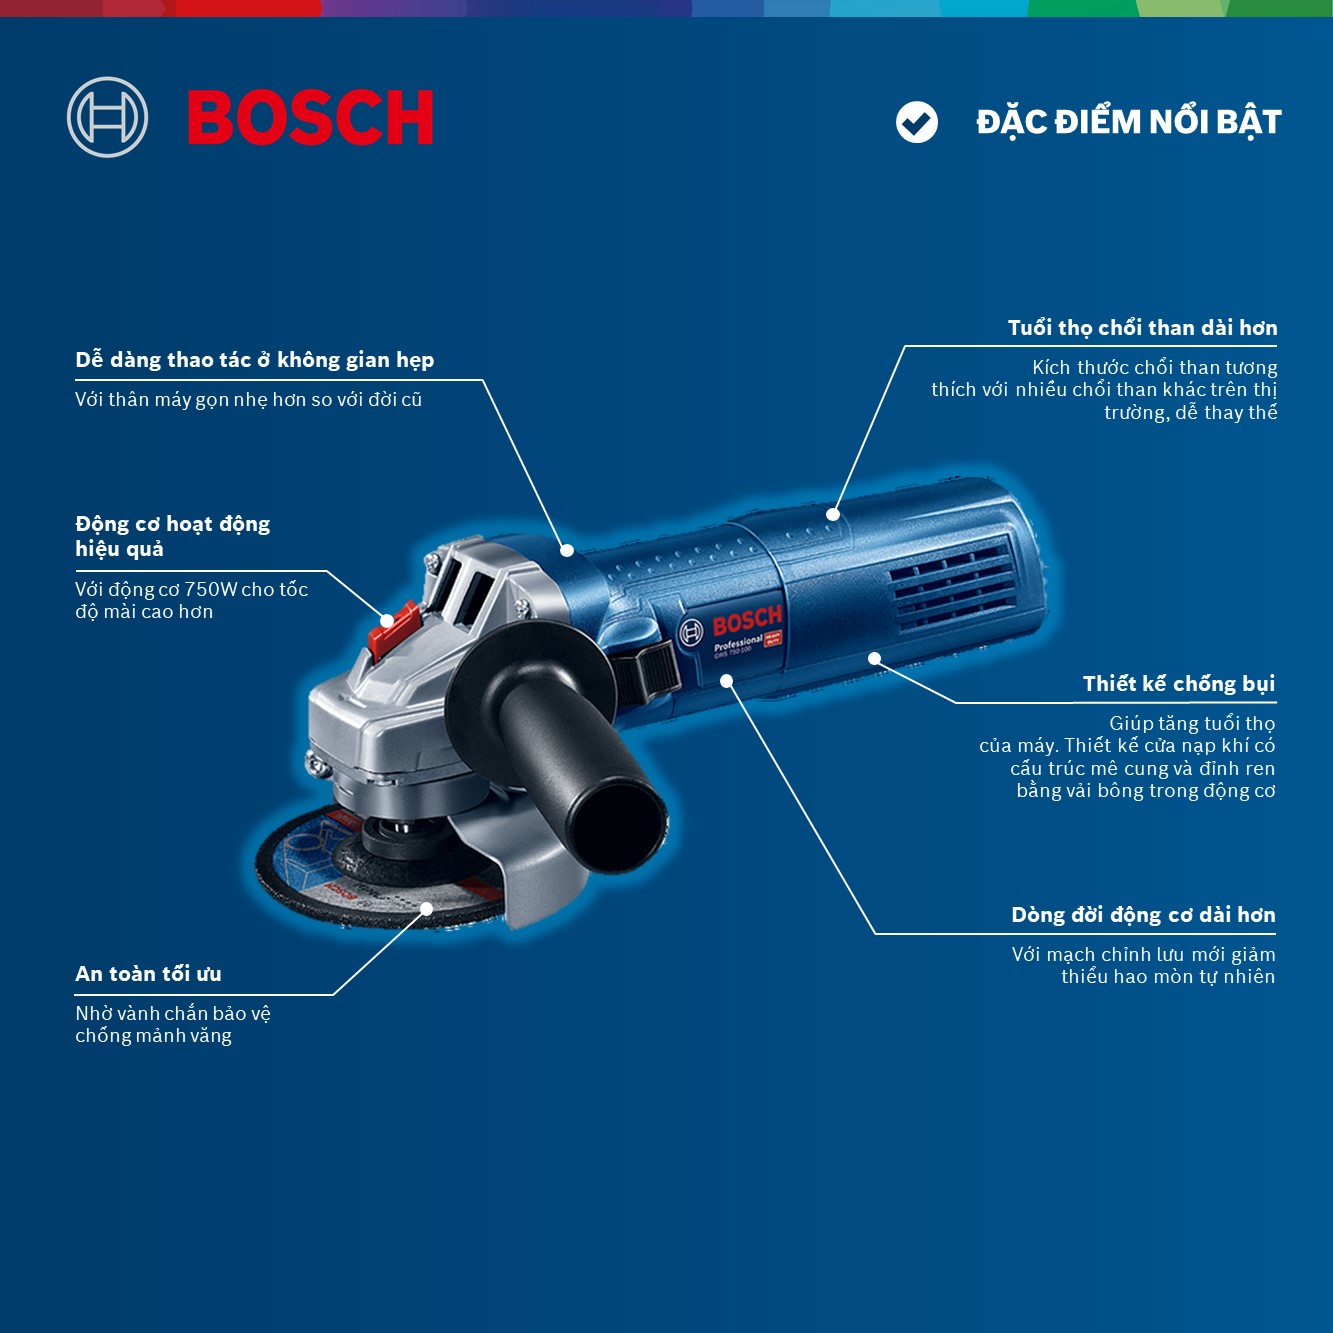 Máy Mài Góc Bosch GWS 750-100 - Promo